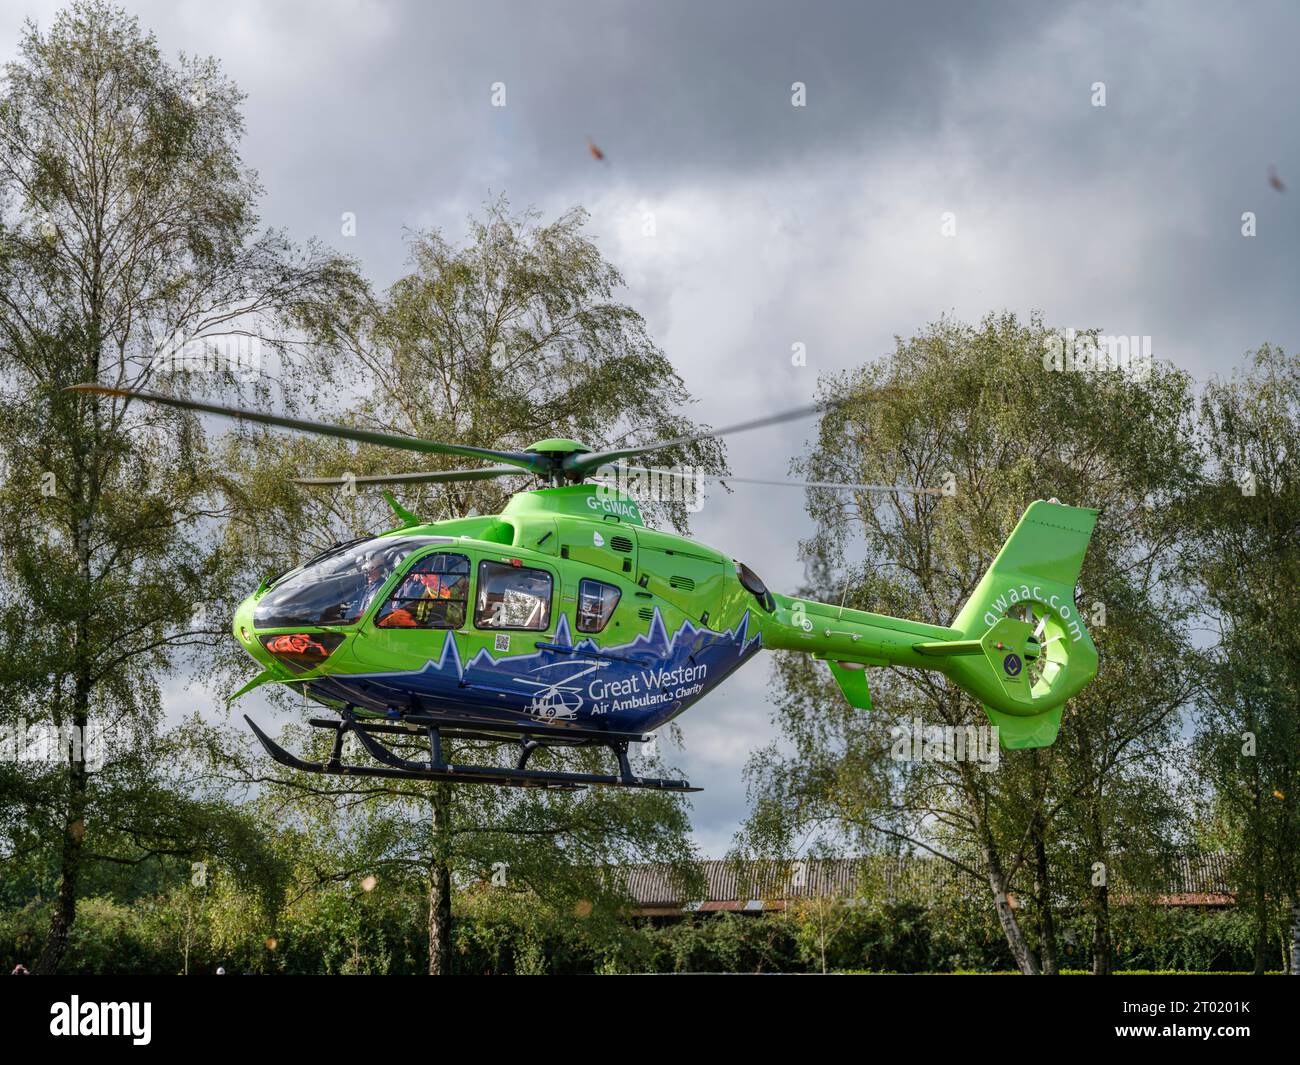 La Great Western Air Ambulance décolle de l'extérieur de l'hôpital royal de Gloucester. L'hélicoptère vert lime et bleu vif, indicatif d'appel Helimed 65, est Banque D'Images